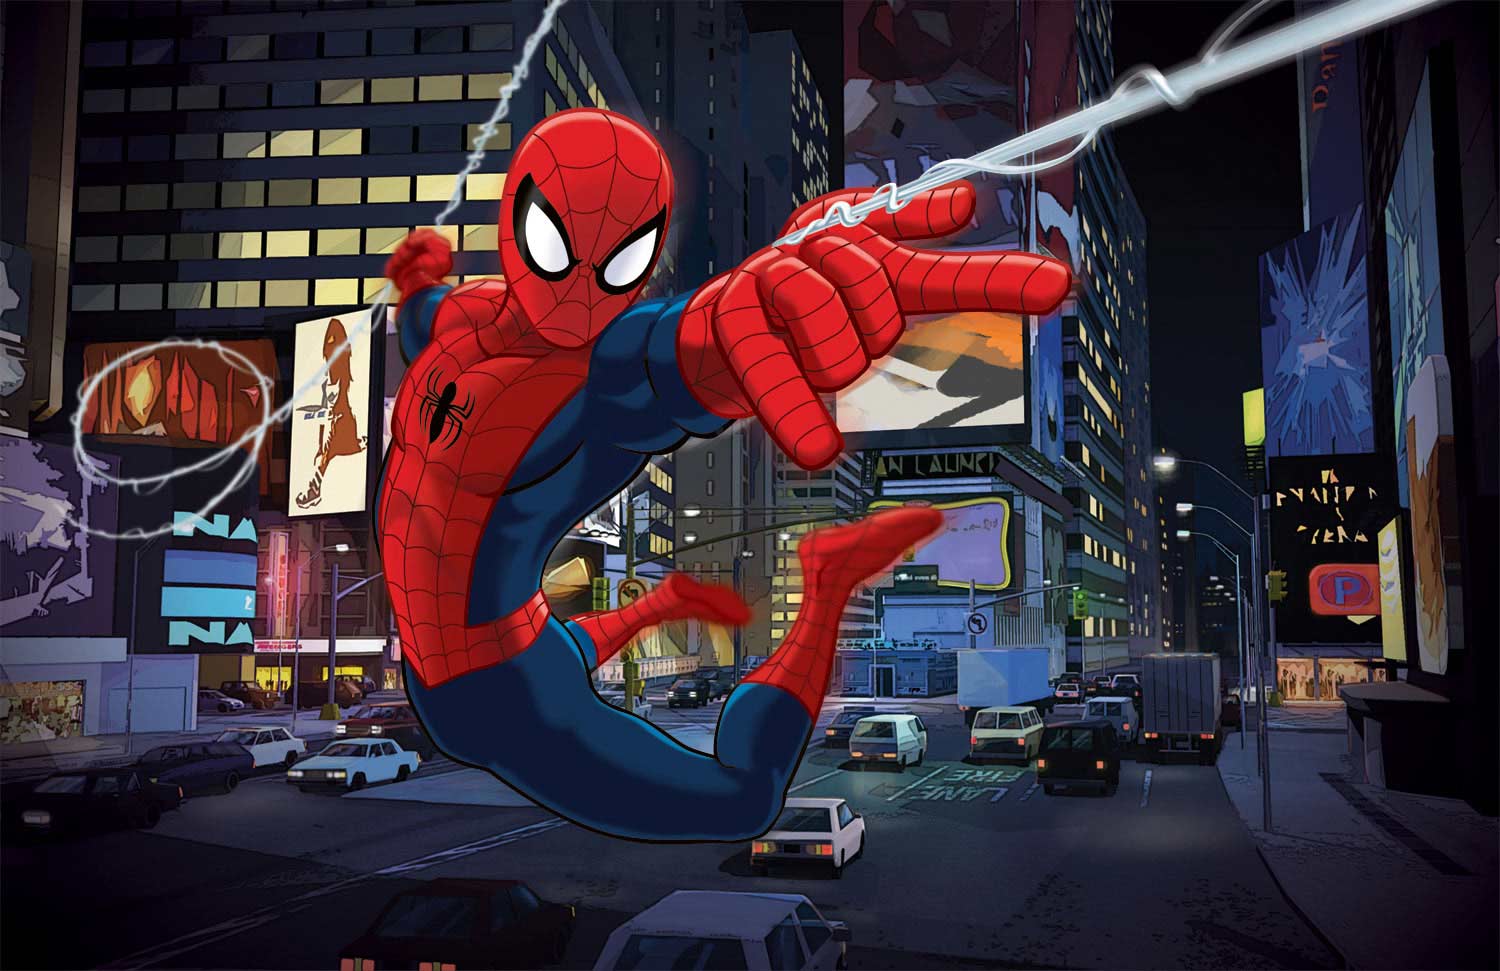 Ultimate Spider Man Wallpaper, Comics, HQ Ultimate Spider Man PictureK Wallpaper 2019